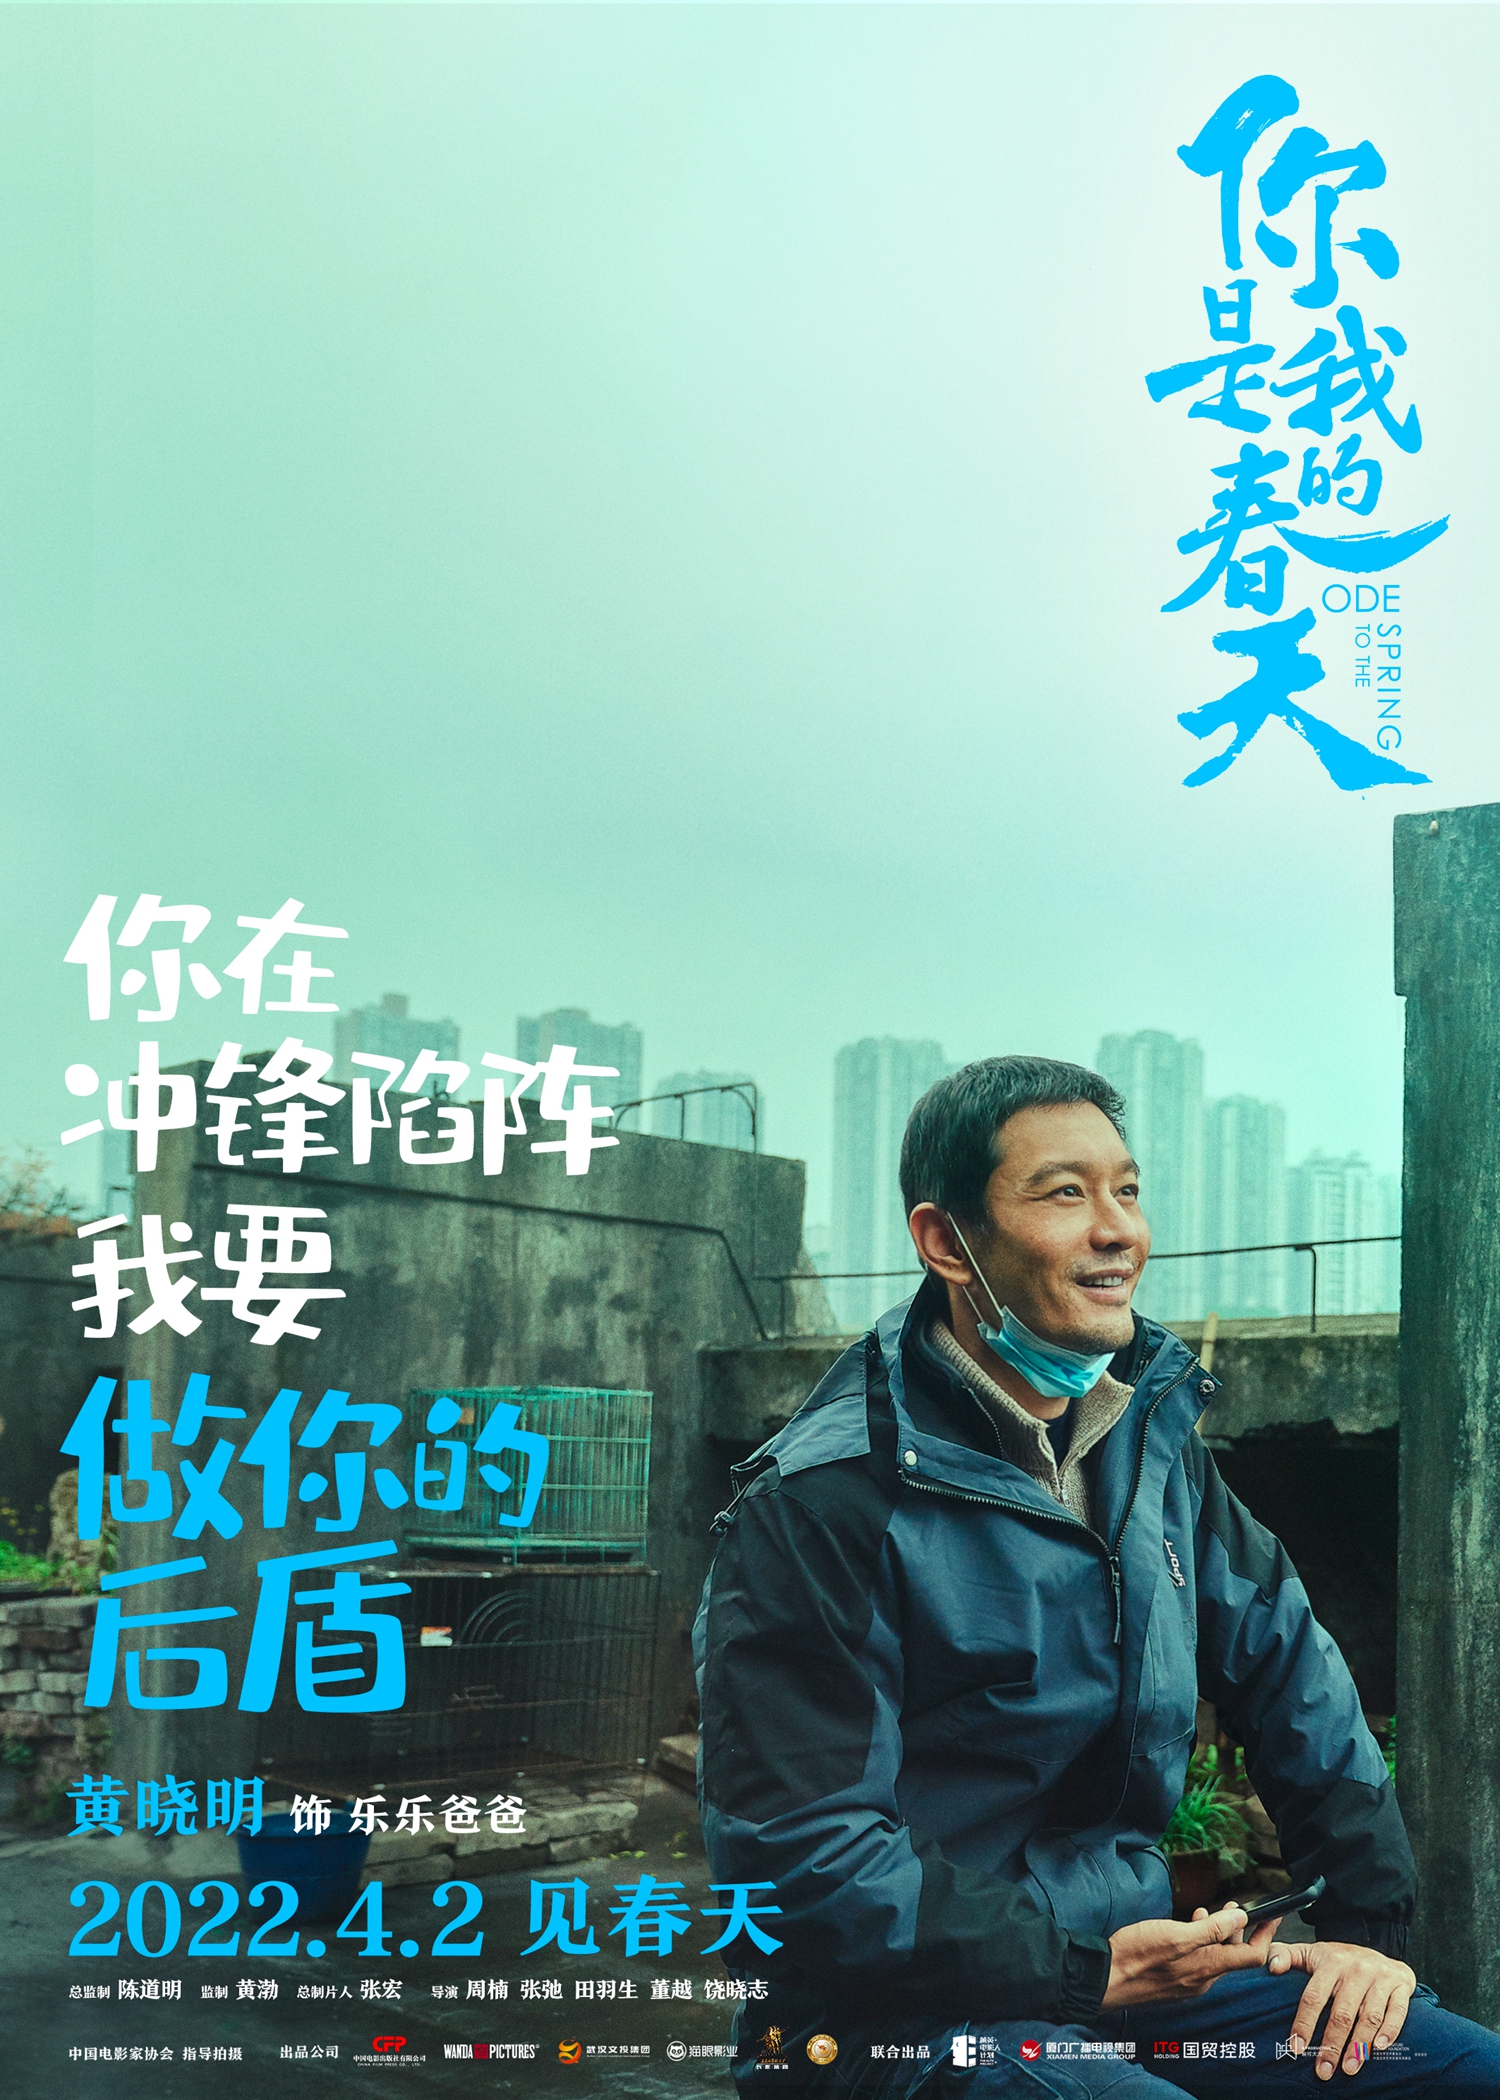 《你是我的春天》定档4月2日 黄晓明饰援鄂医生丈夫诠释温情守